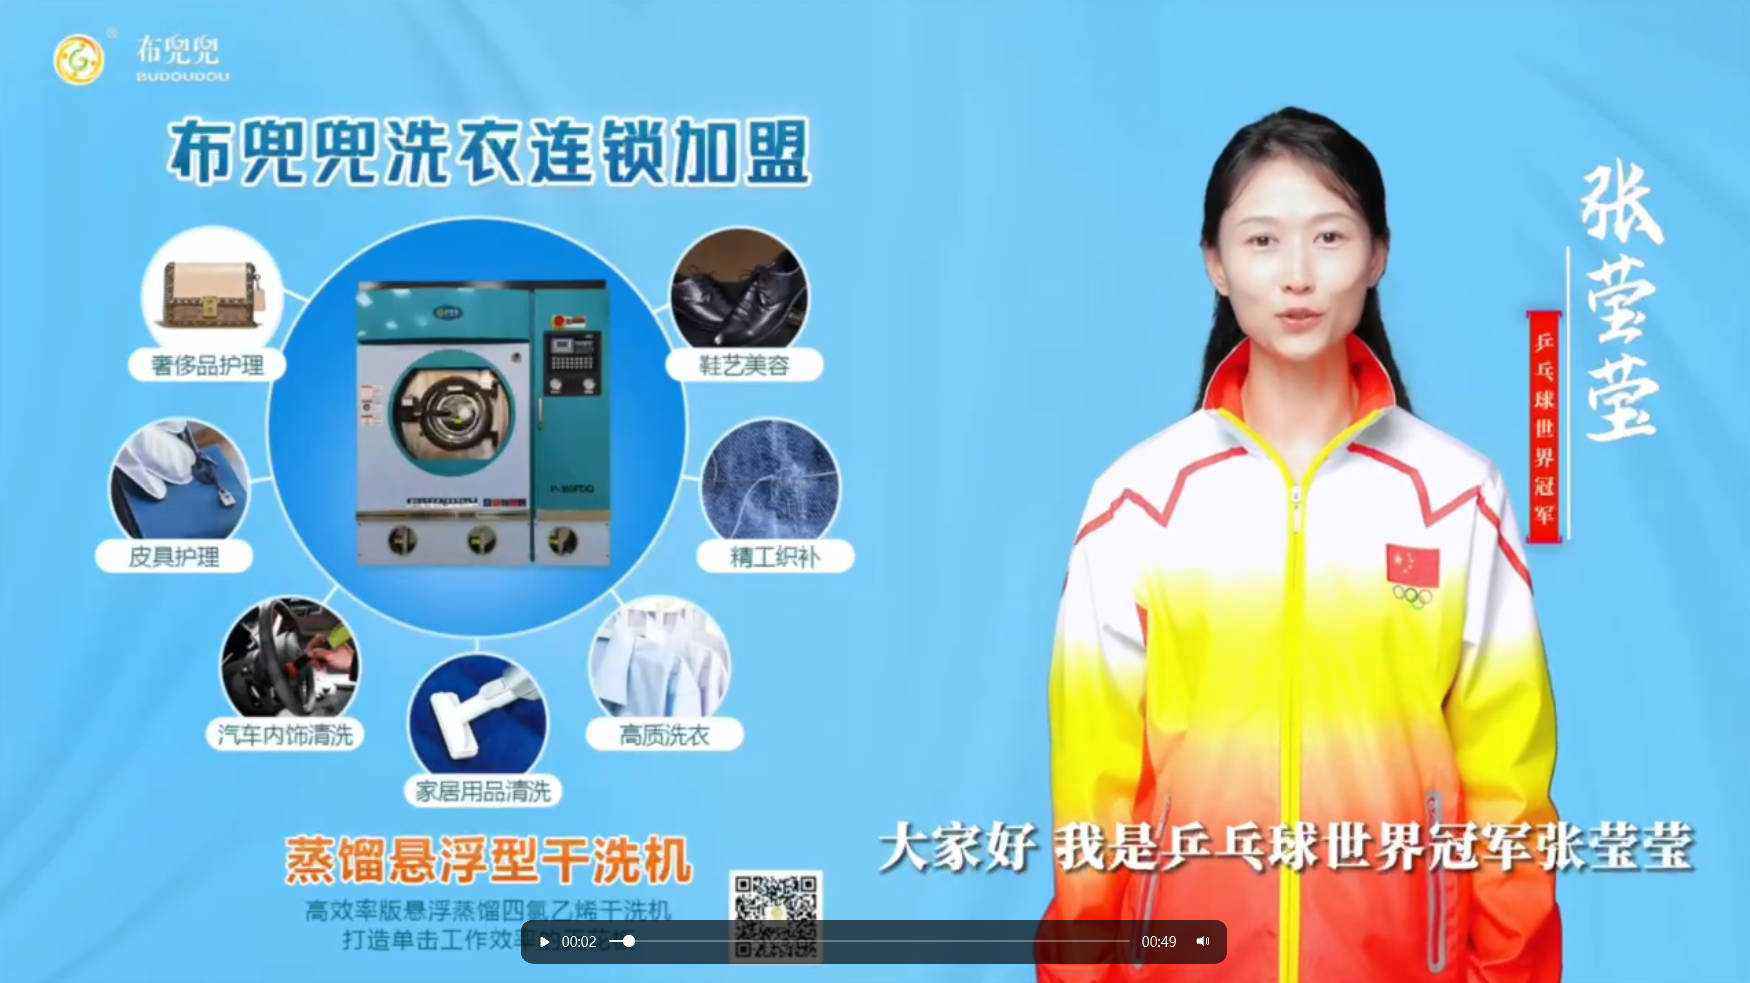 乒乓球世界冠军张莹莹，为布兜兜品牌助力